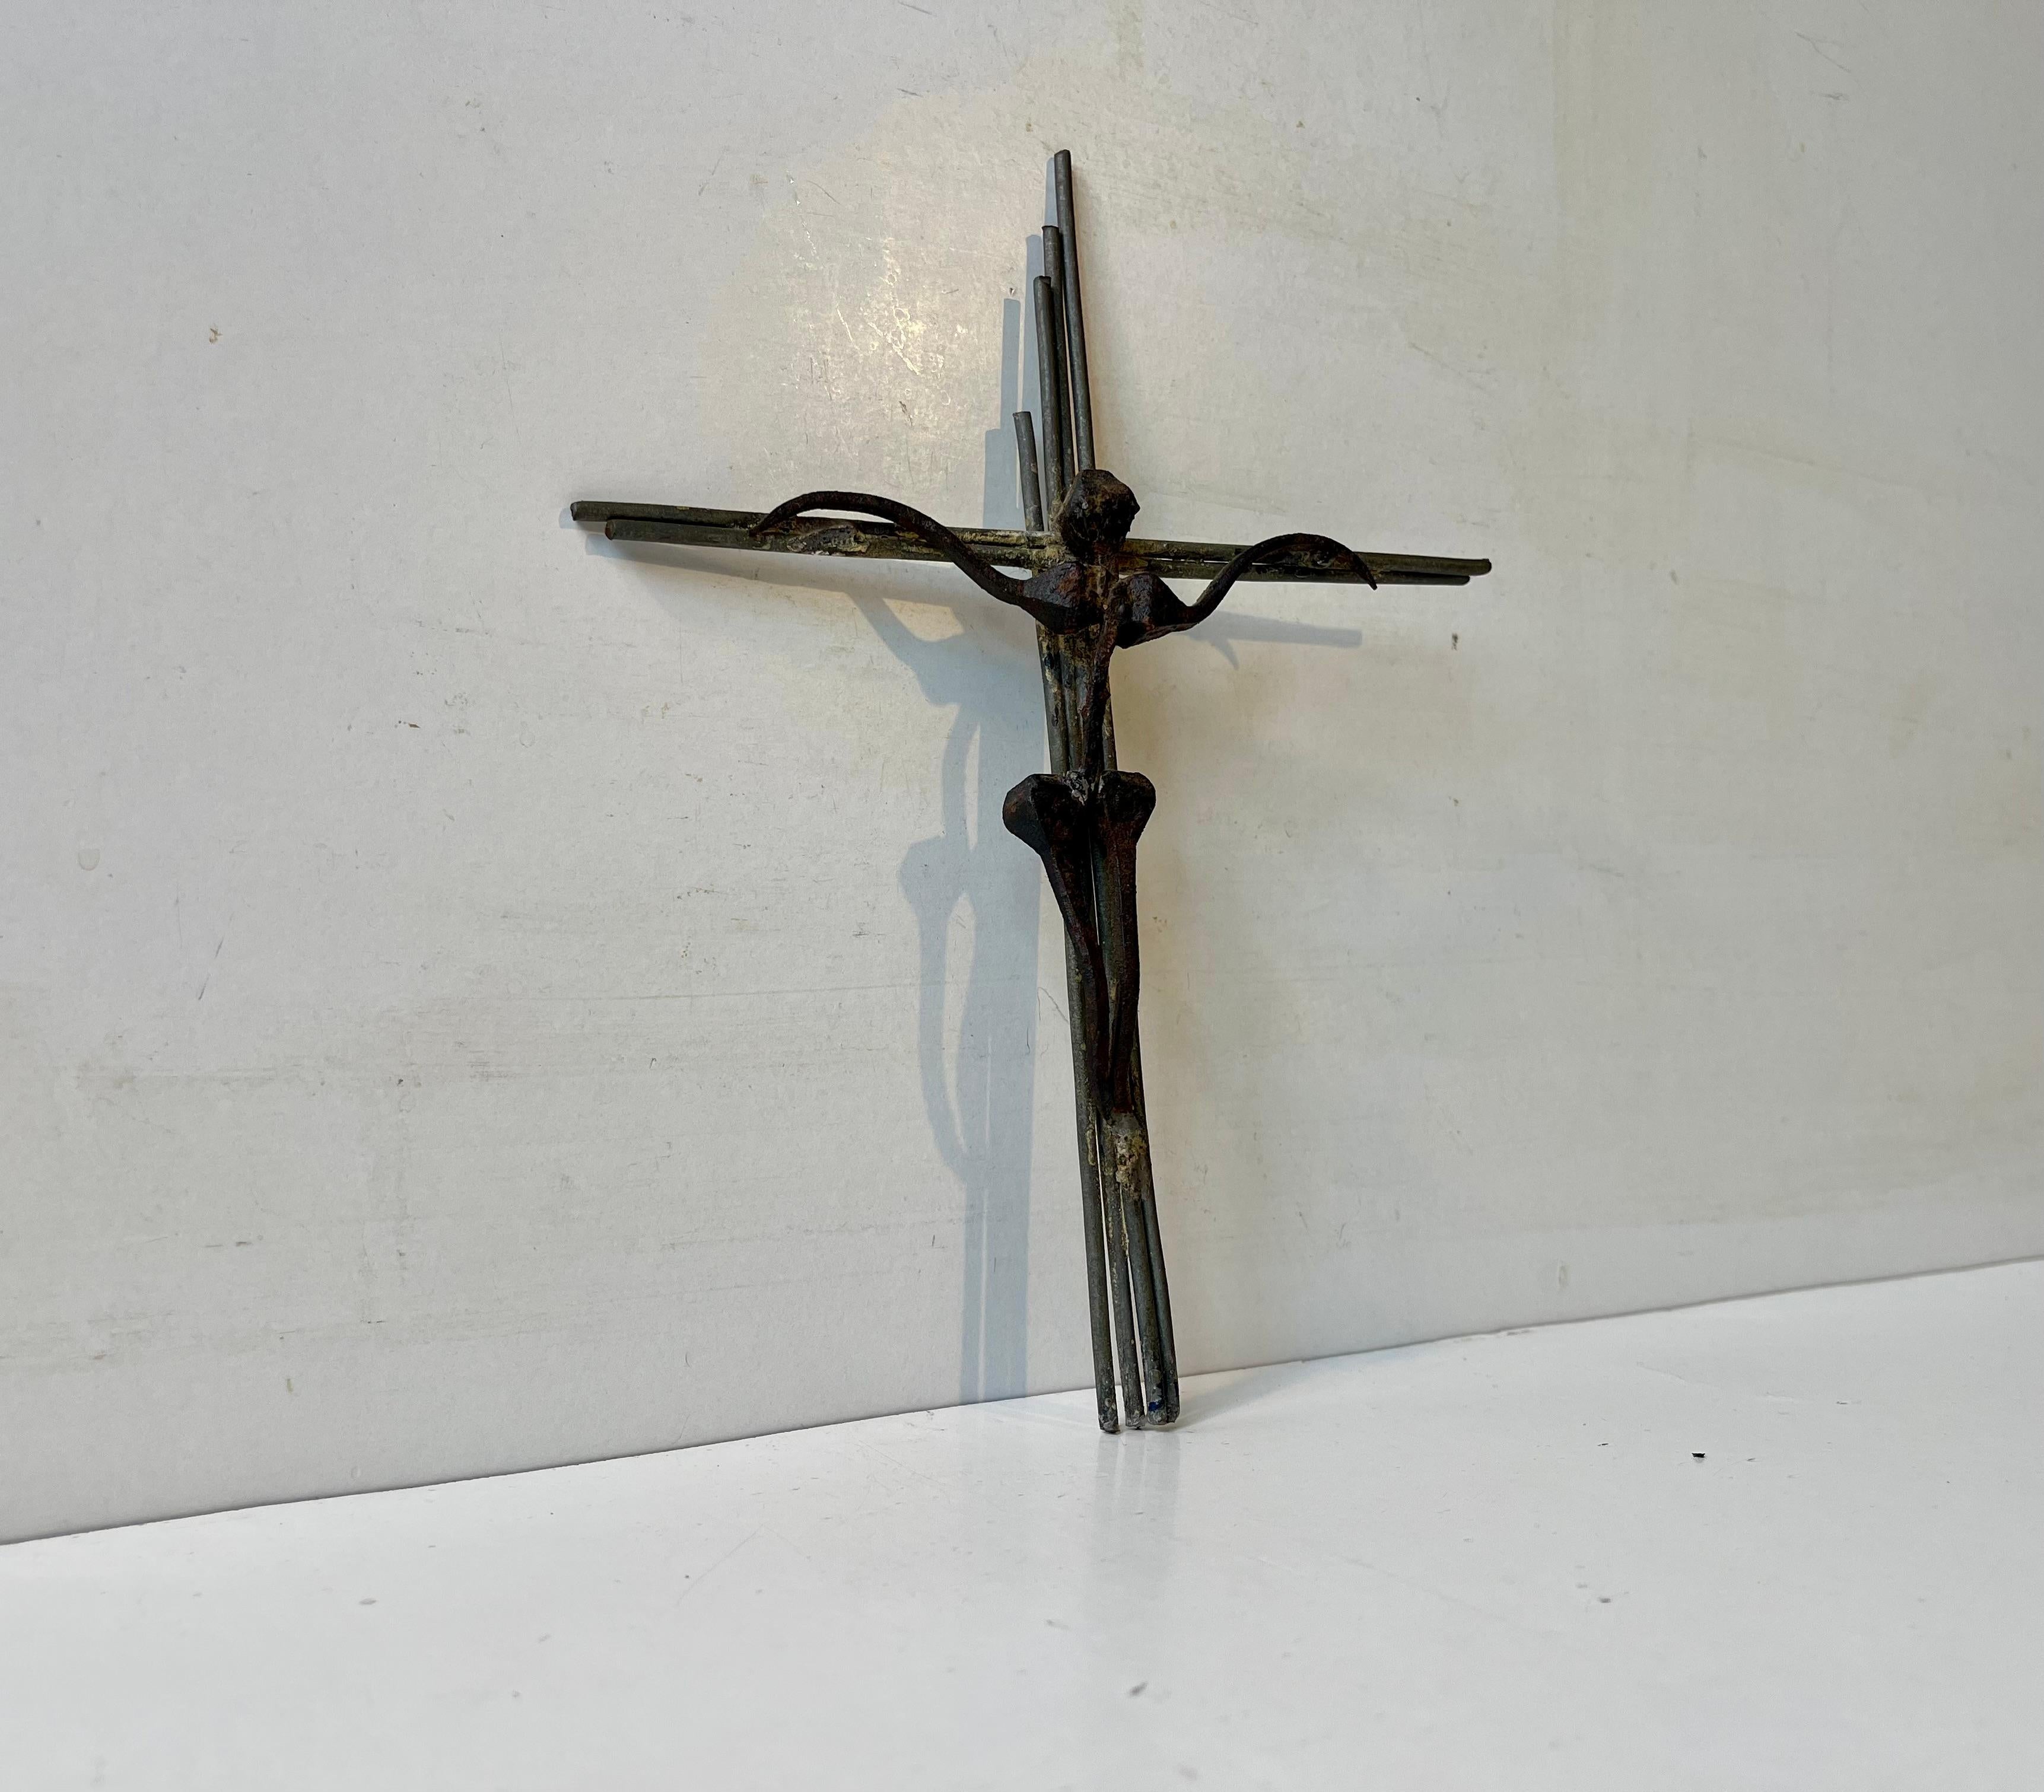 Artiste/sculpteur scandinave anonyme vers les années 1960-70. Crucifix brut et primitif inhabituel, fabriqué à partir de clous noirs antiques et monté sur une croix/base en laiton patiné. Dimensions : H : 20 cm, L : 14 cm, Dépt : 1 cm.

Livraison